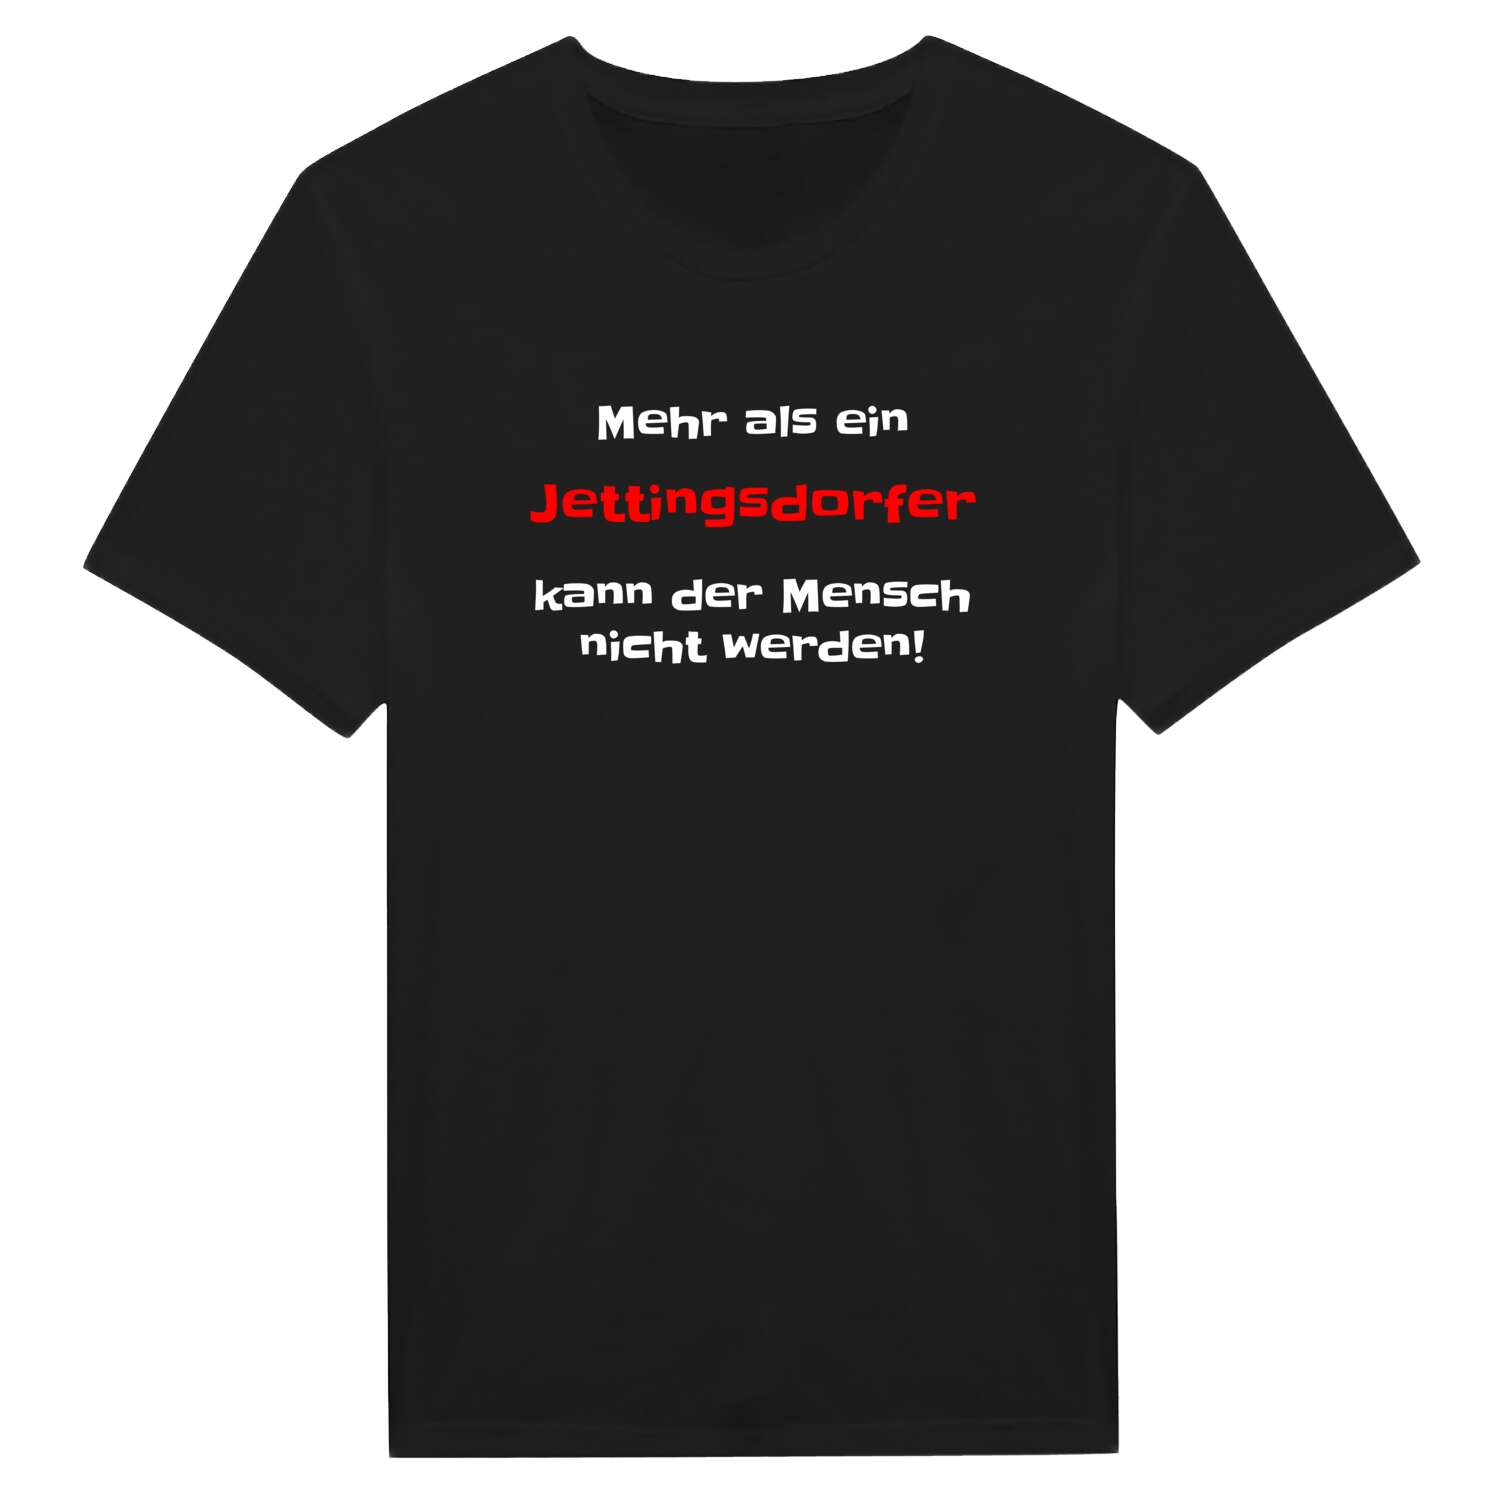 Jettingsdorf T-Shirt »Mehr als ein«